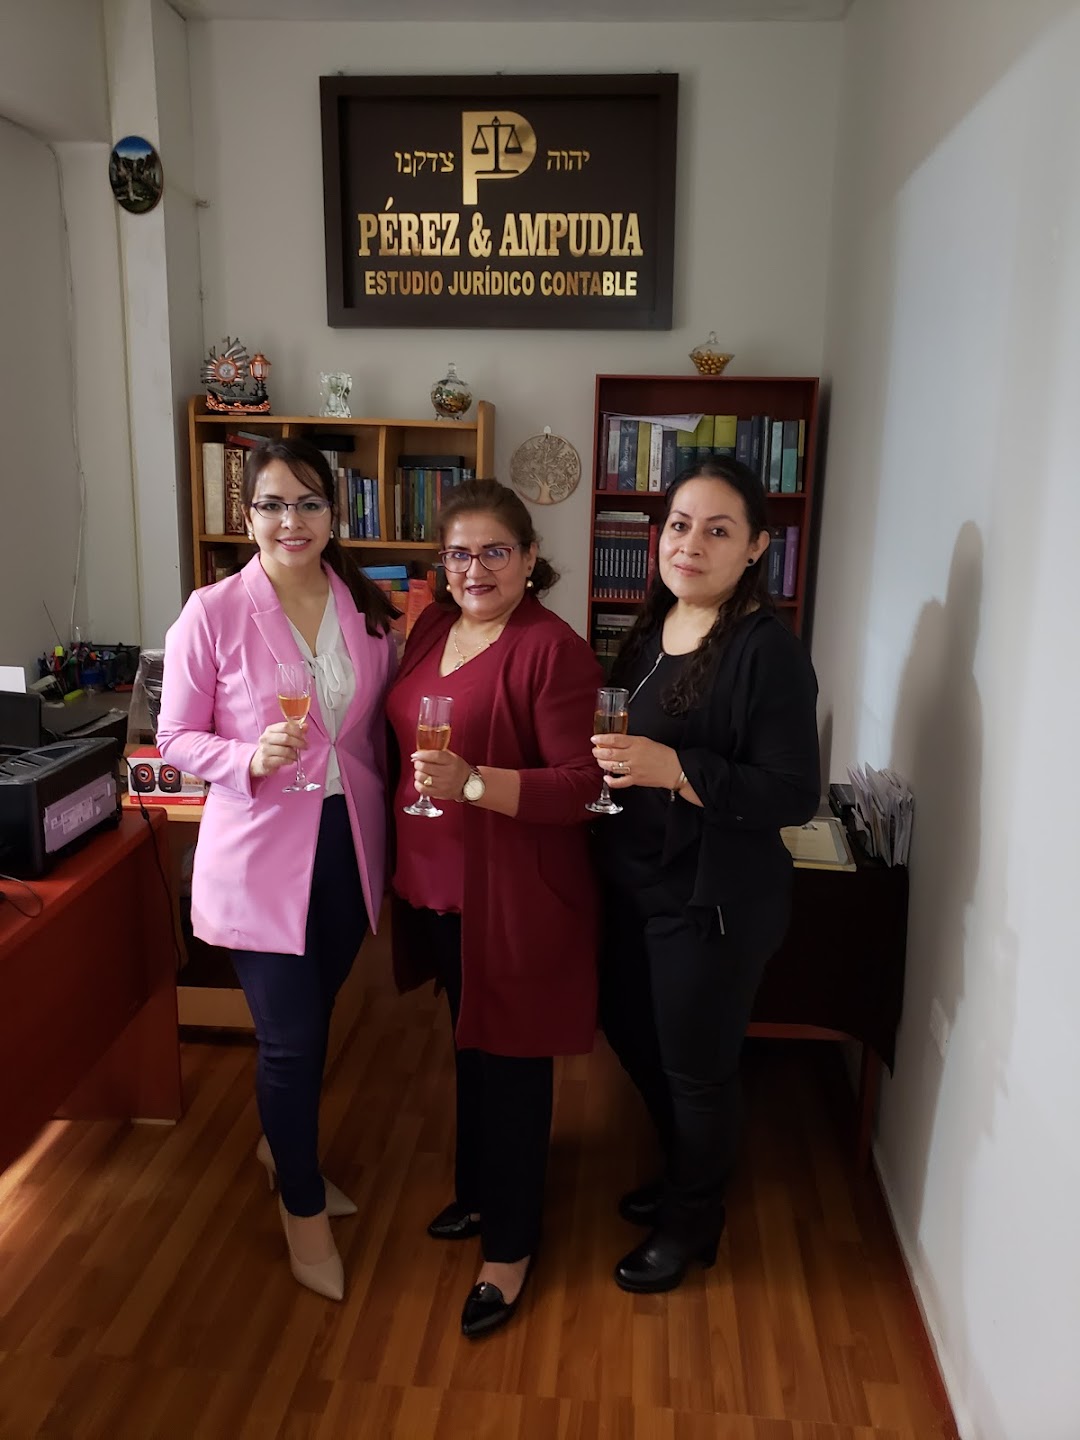 Estudio Jurídico Contable Pérez & Ampudia